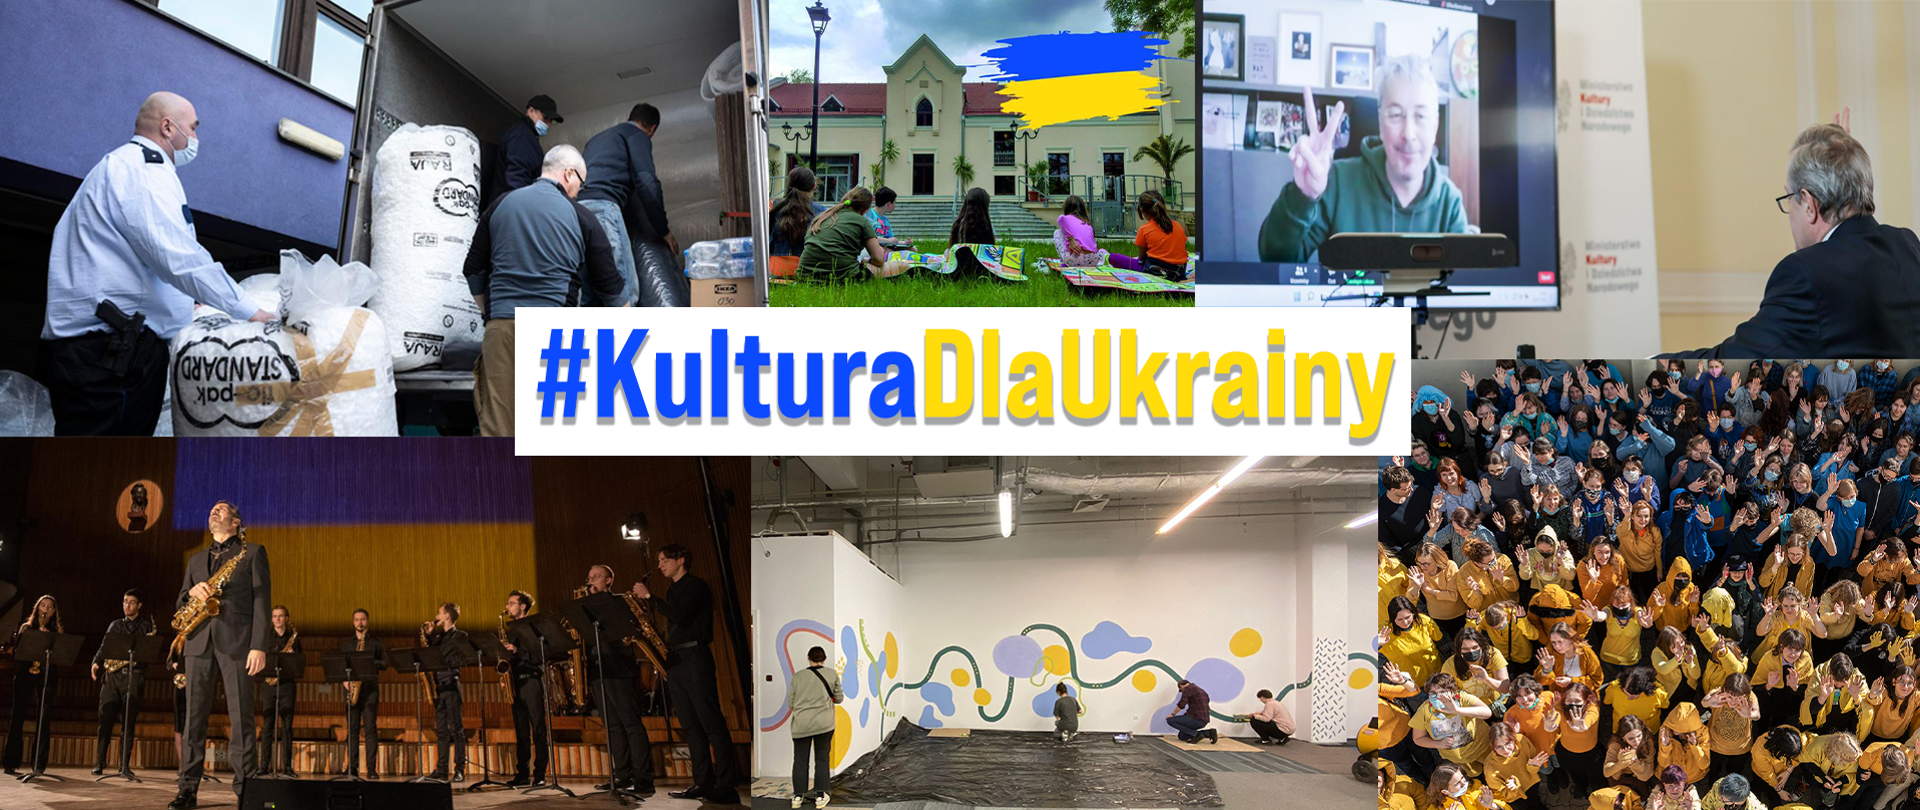 Kultura dla Ukrainy – podsumowanie działań MKiDN